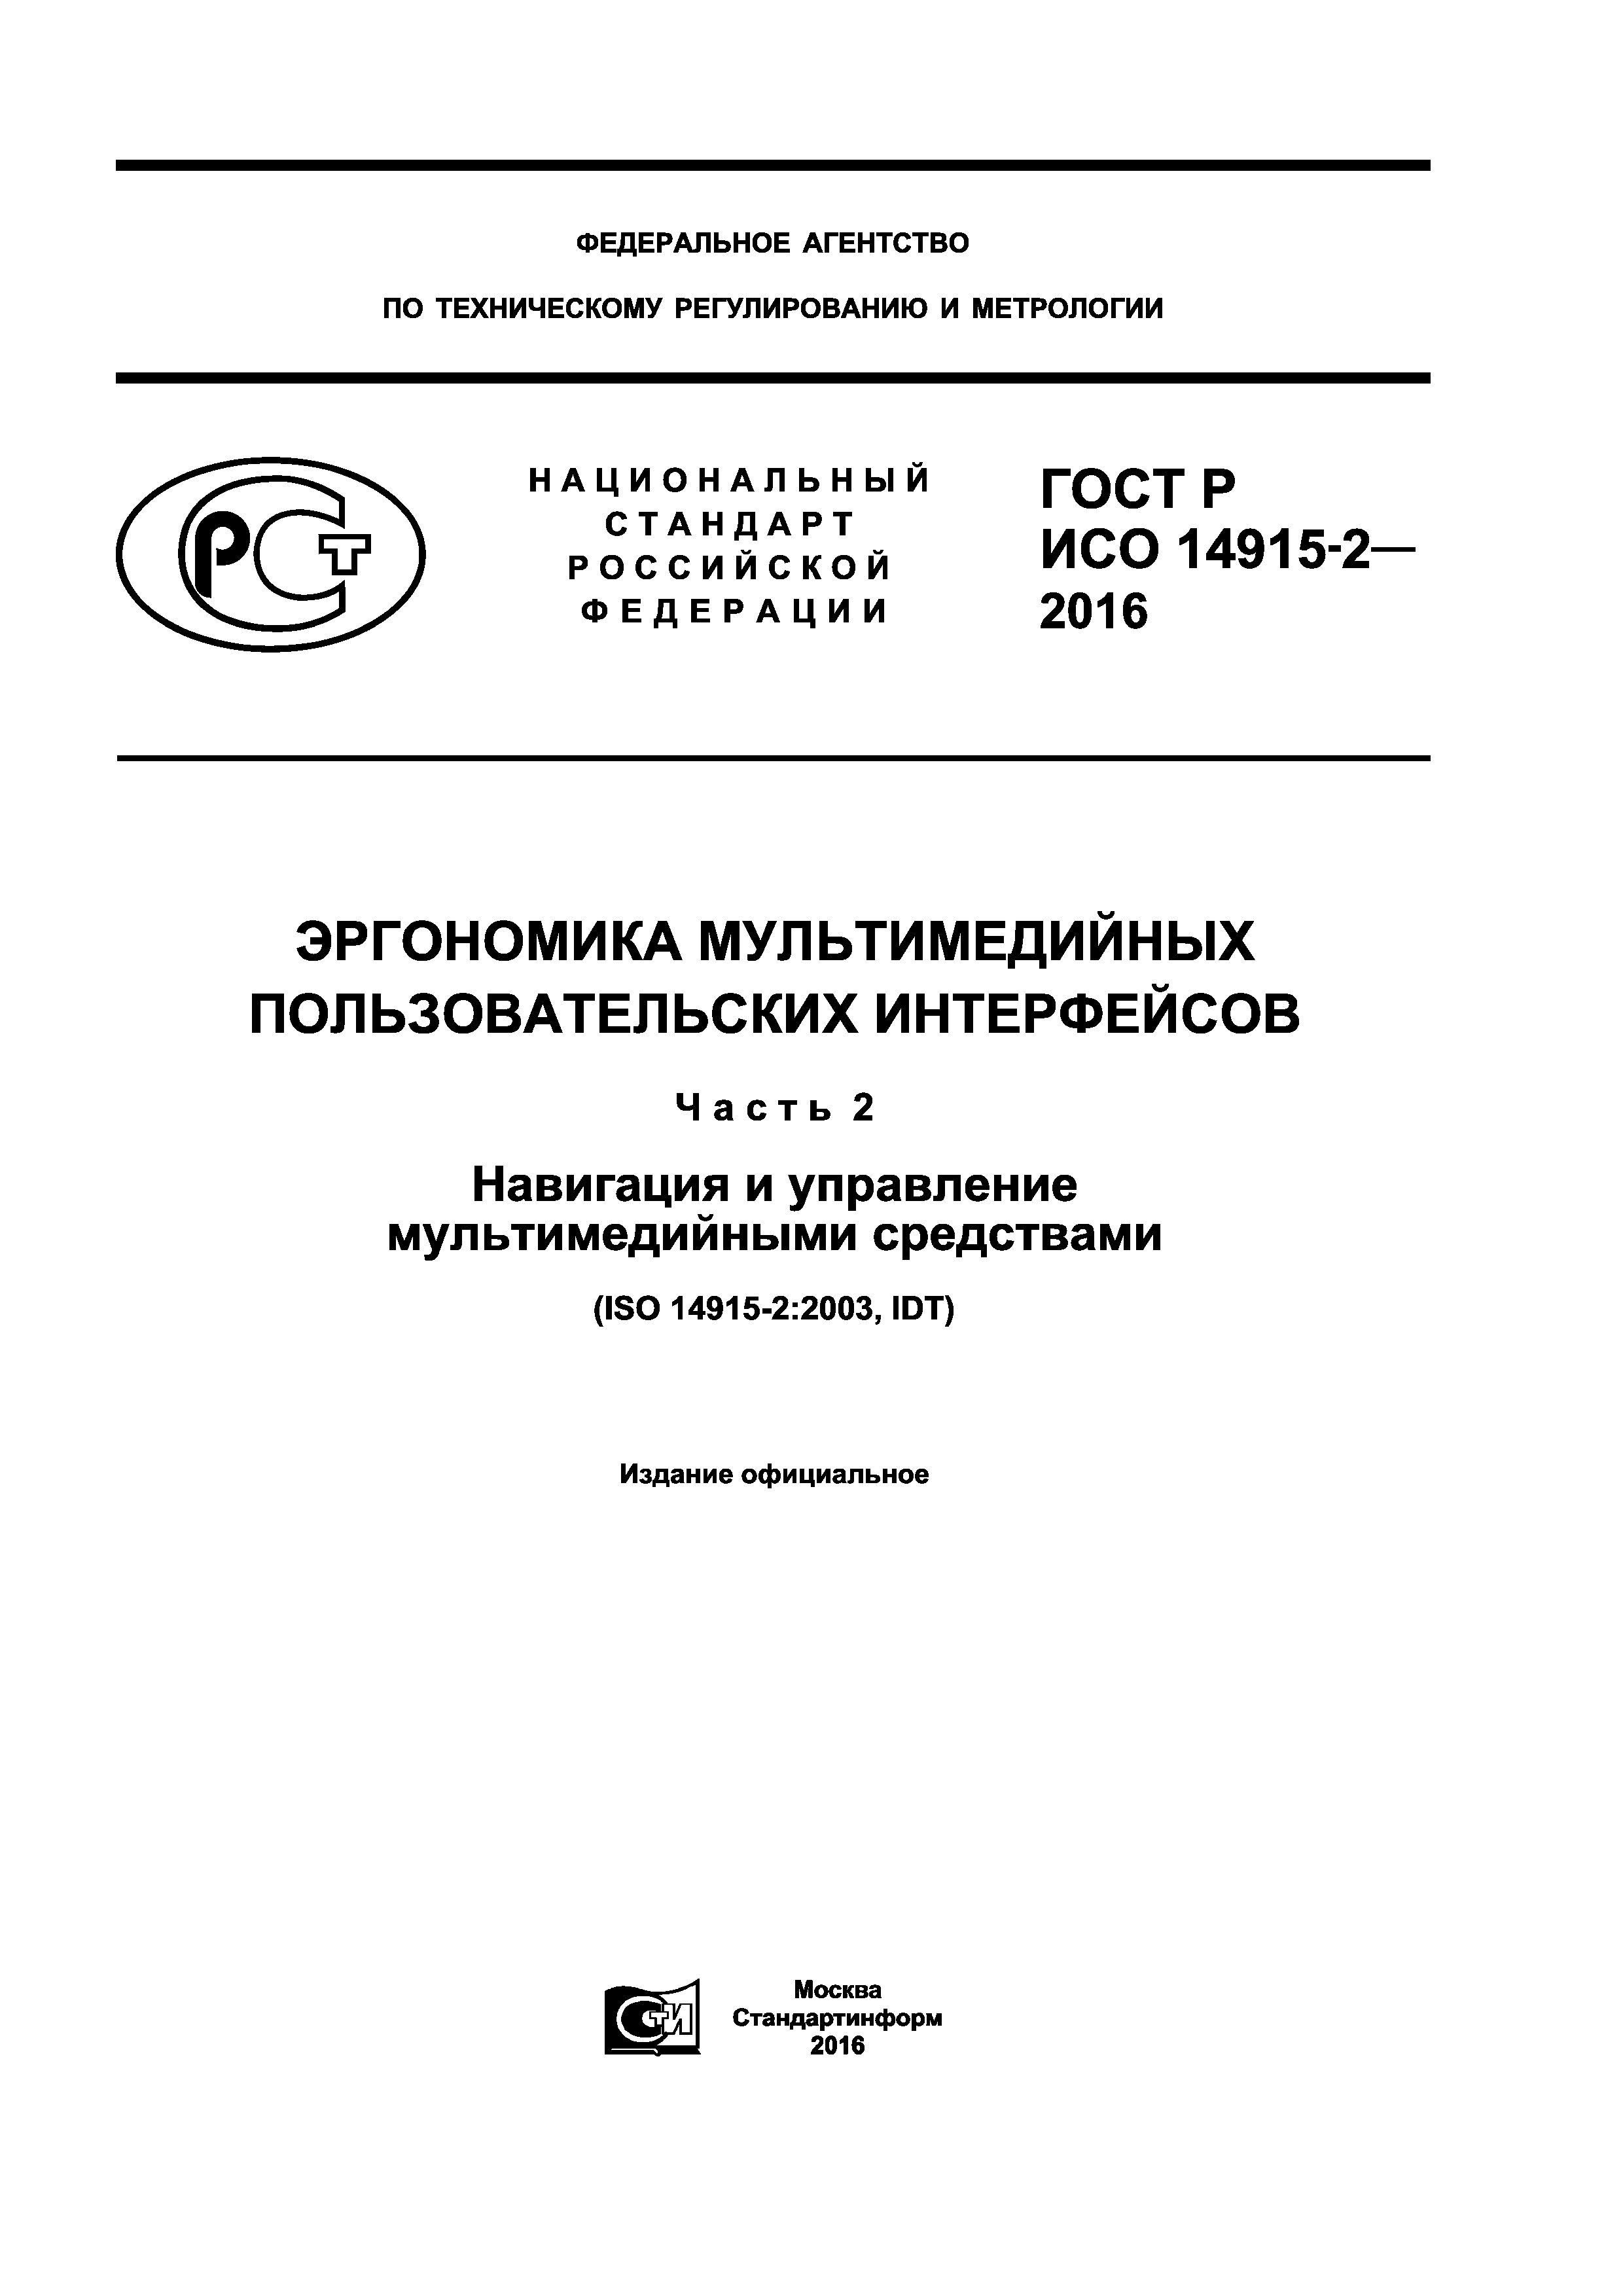 ГОСТ Р ИСО 14915-2-2016